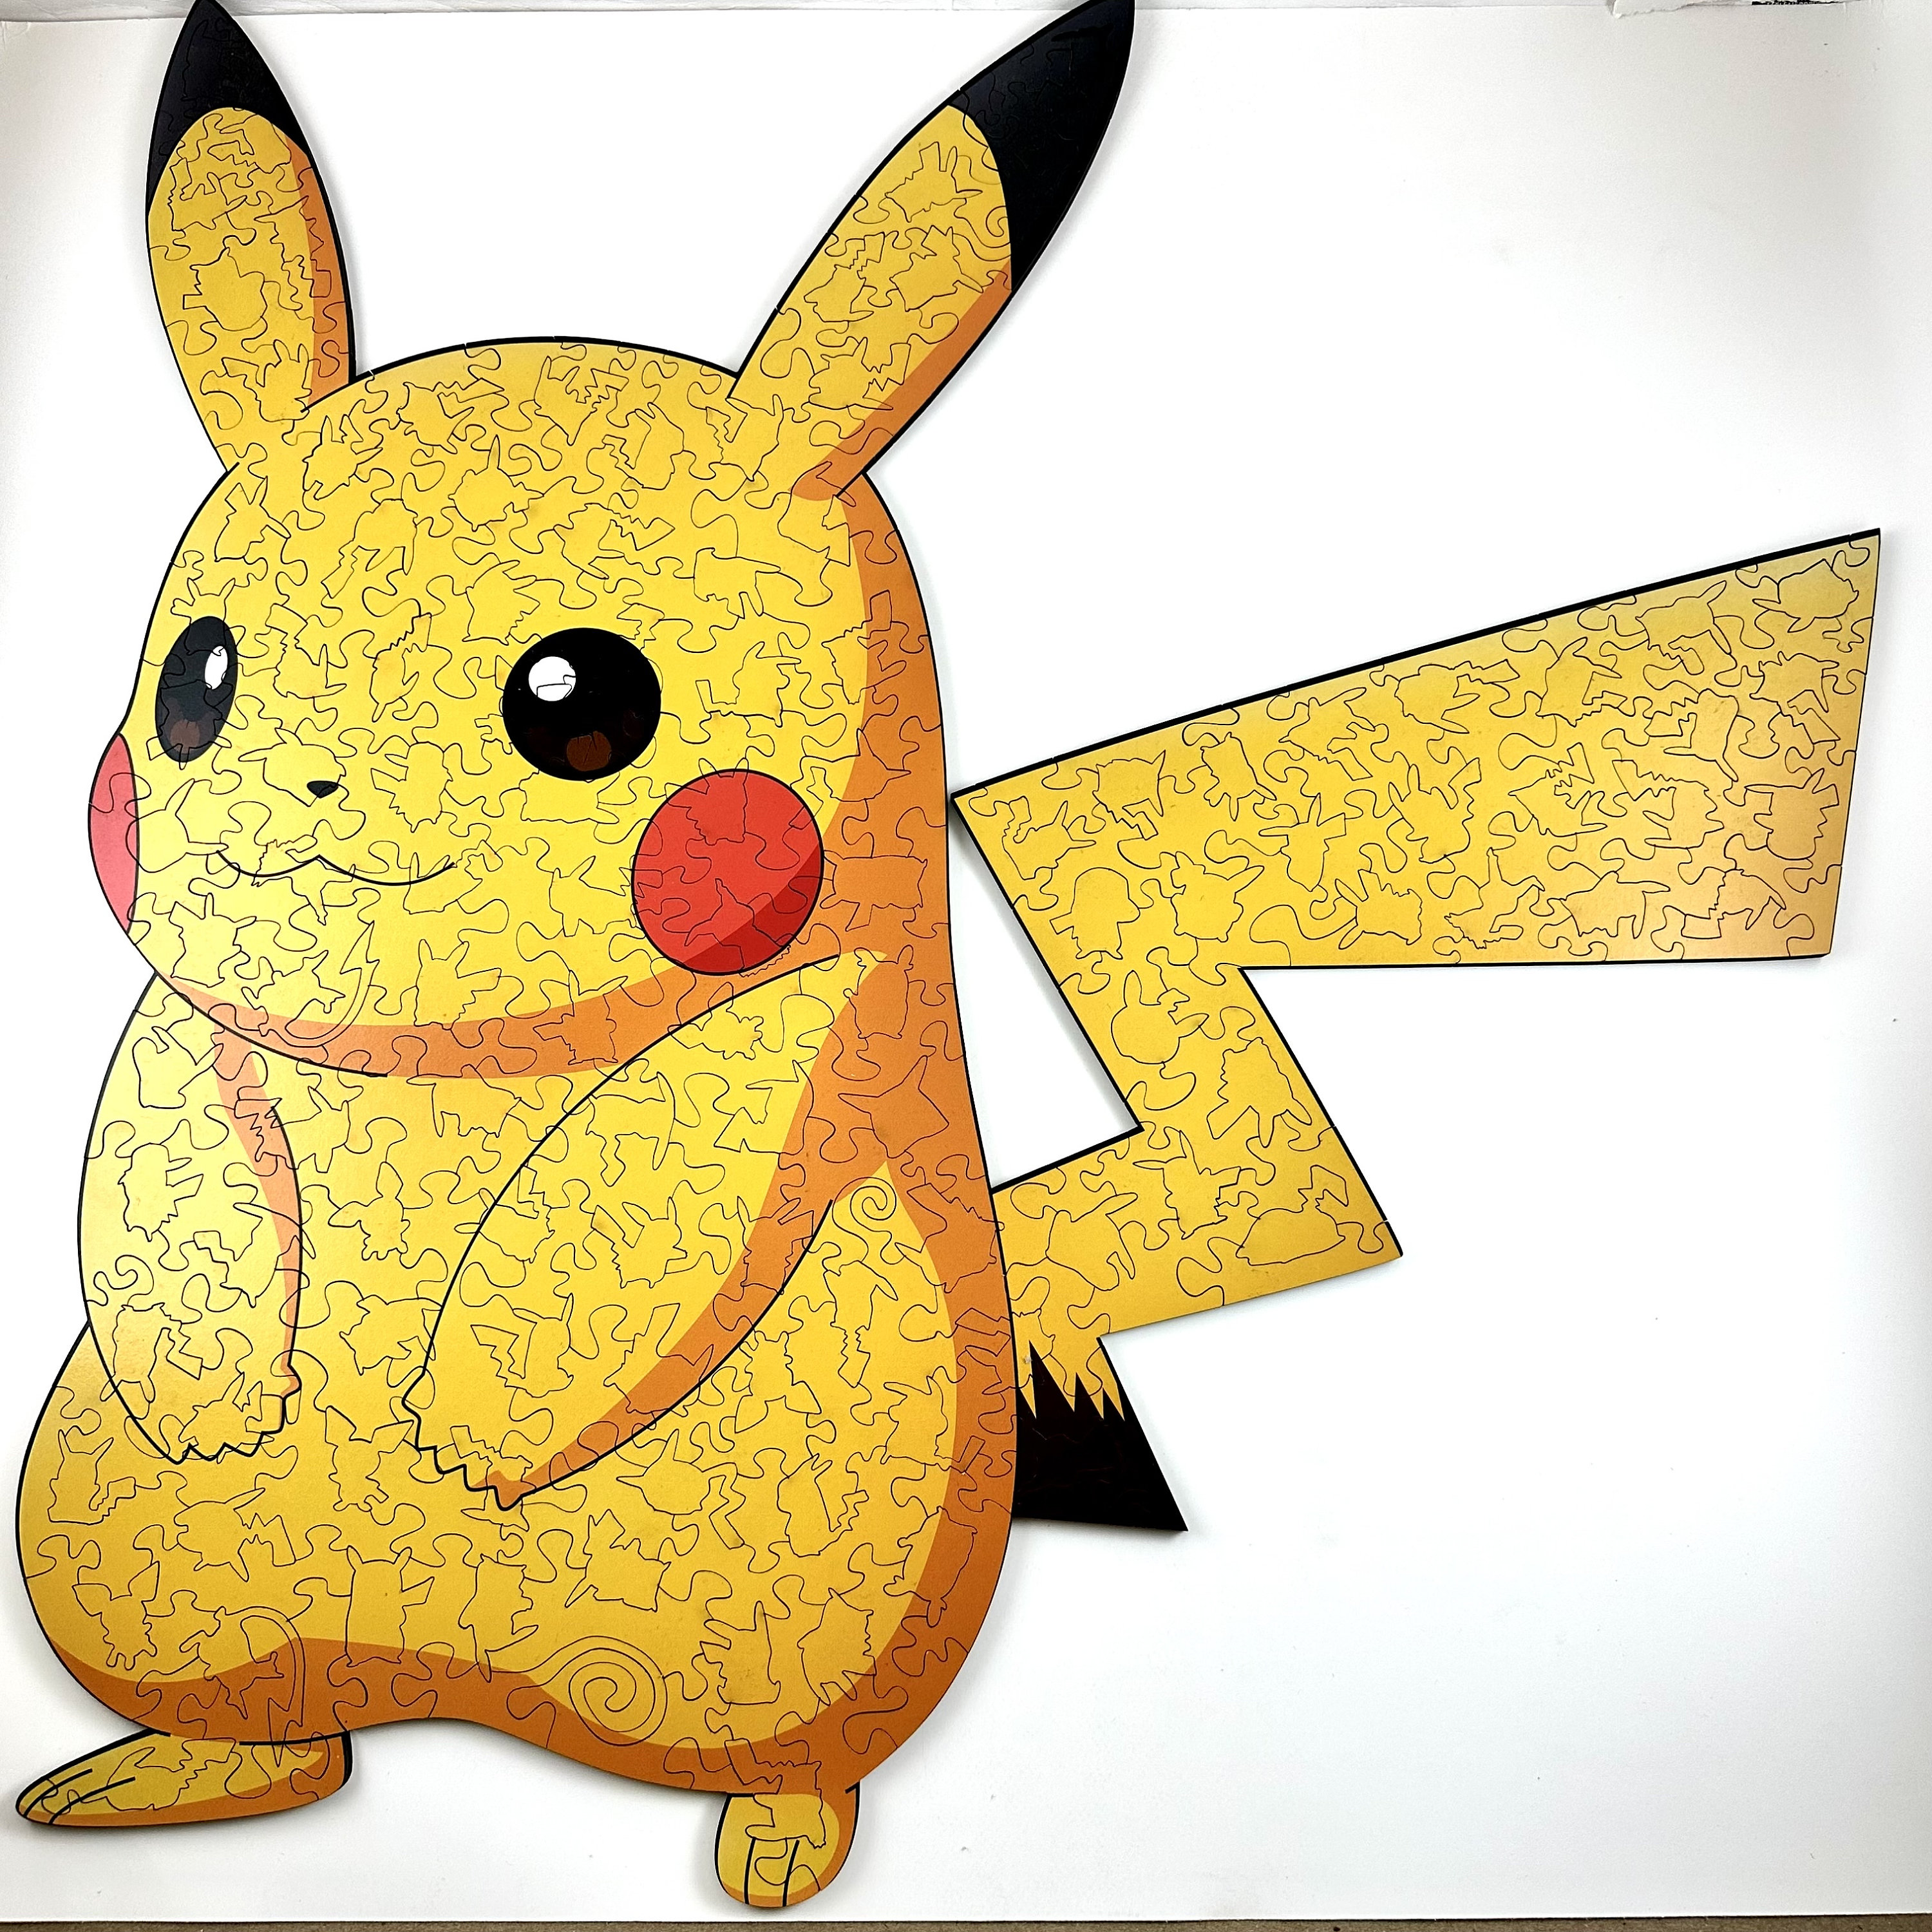 Pikachu Puzzle 